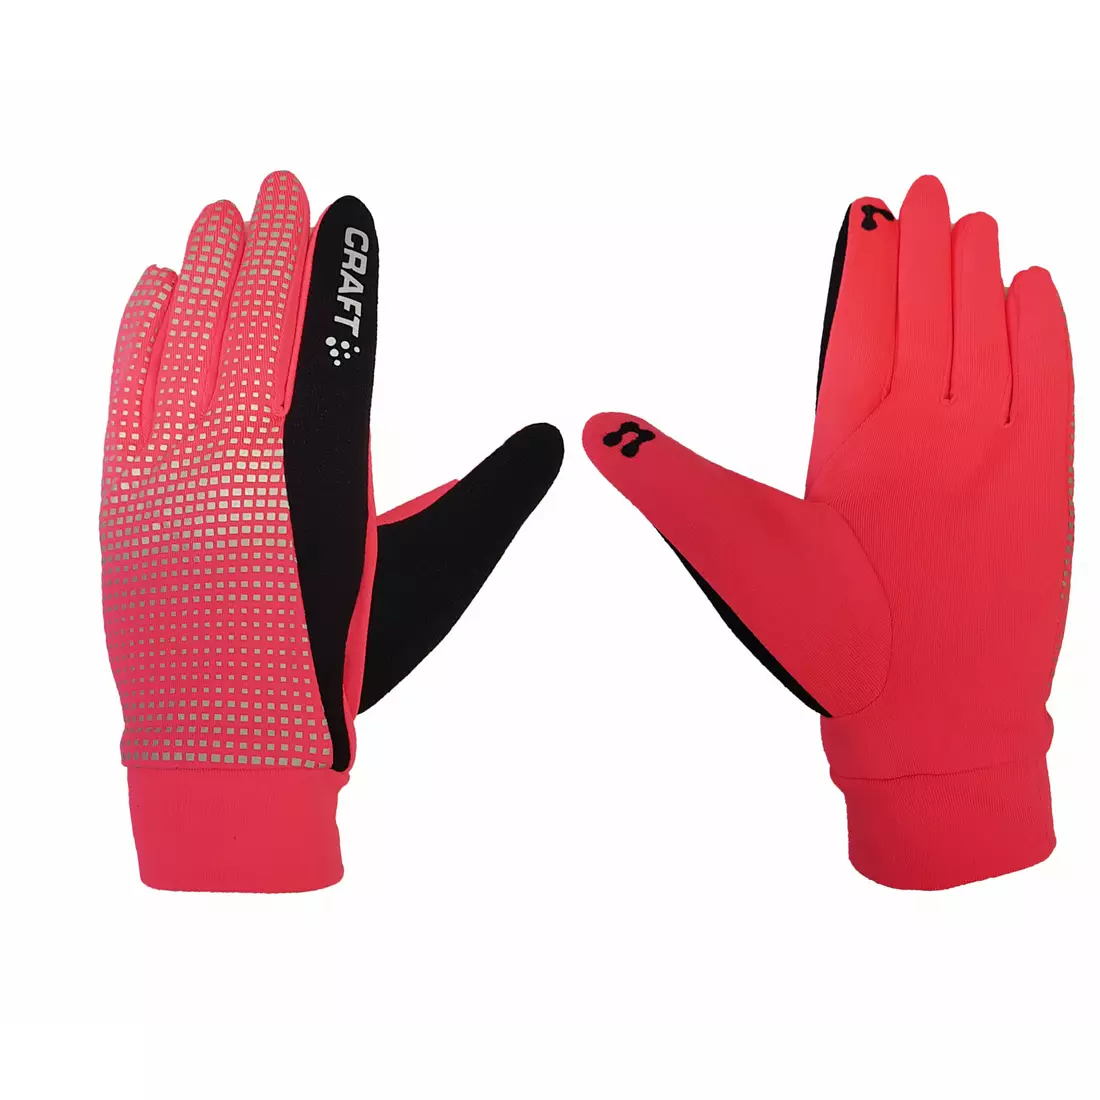 CRAFT BRILLIANT 2.0 warm running gloves 1904311-2801